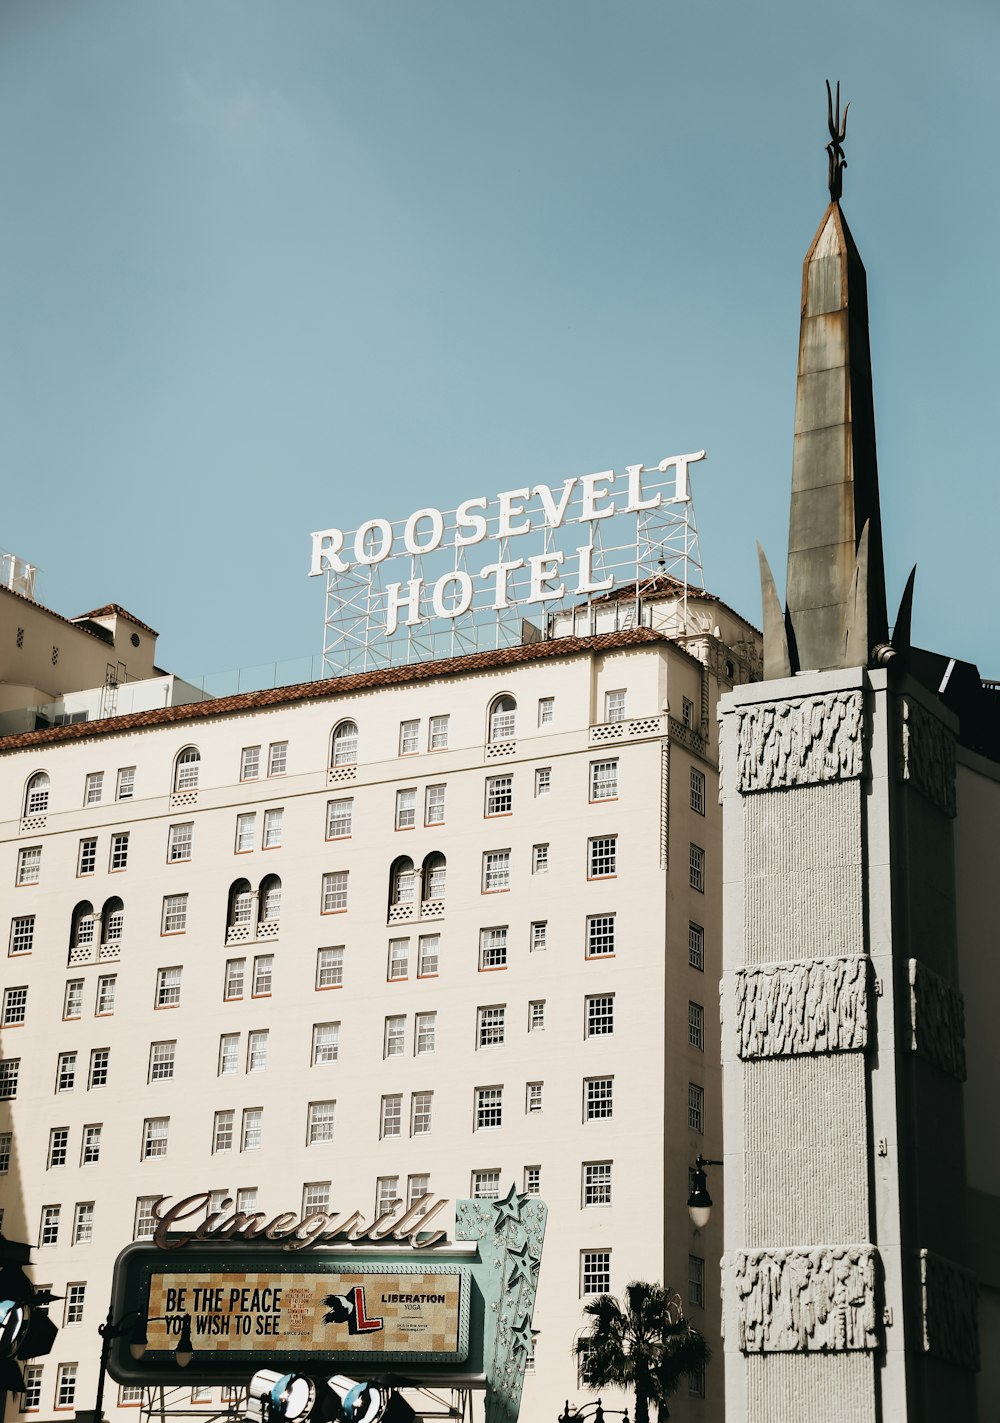 Roosevelt Hotel signage